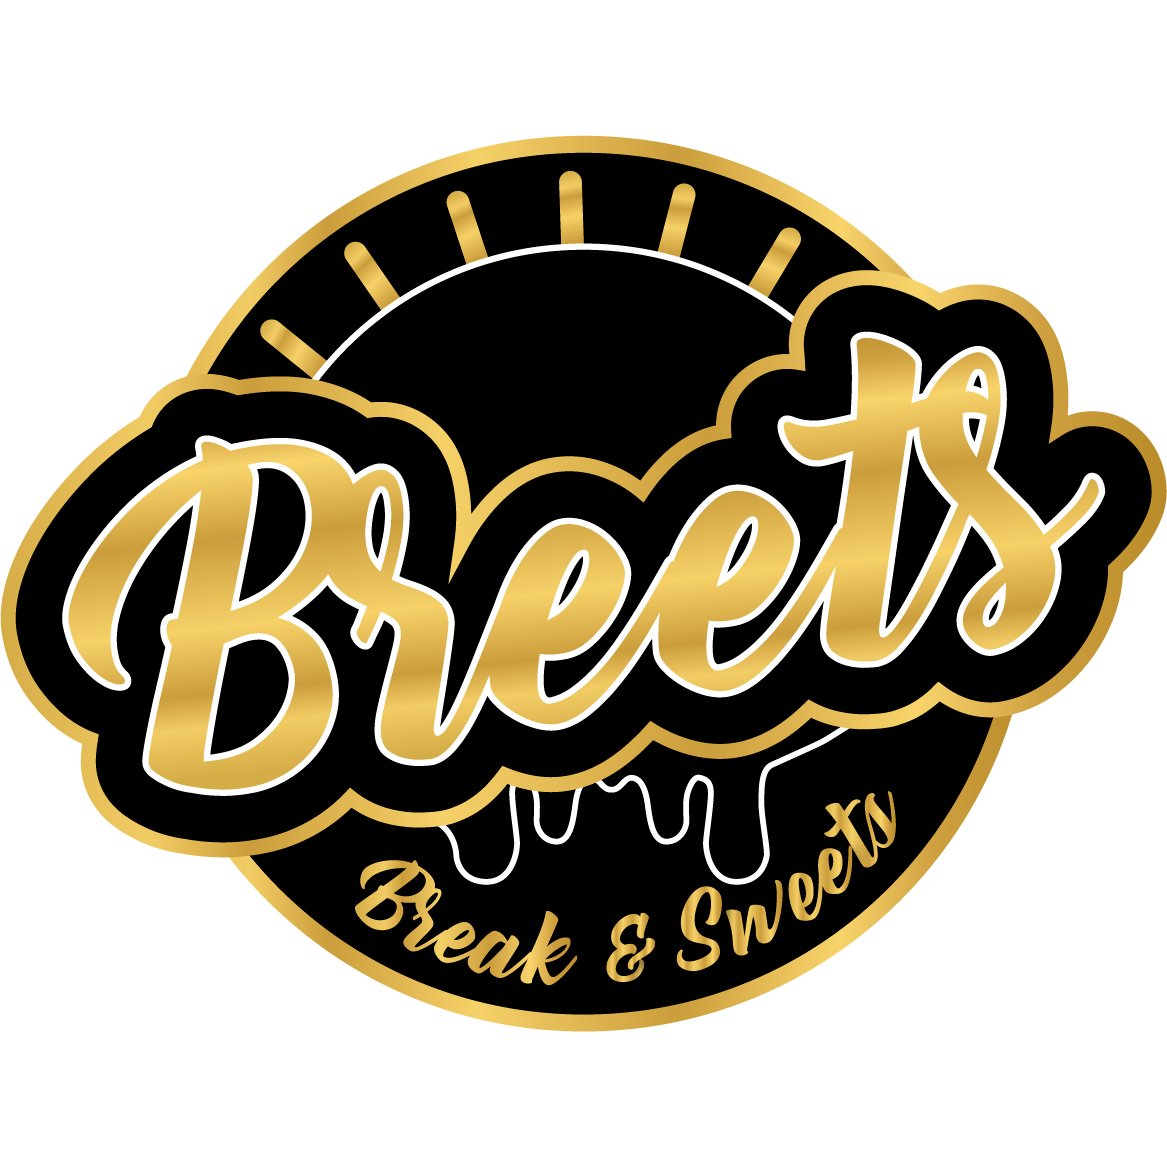 Breets - Break & Sweets  